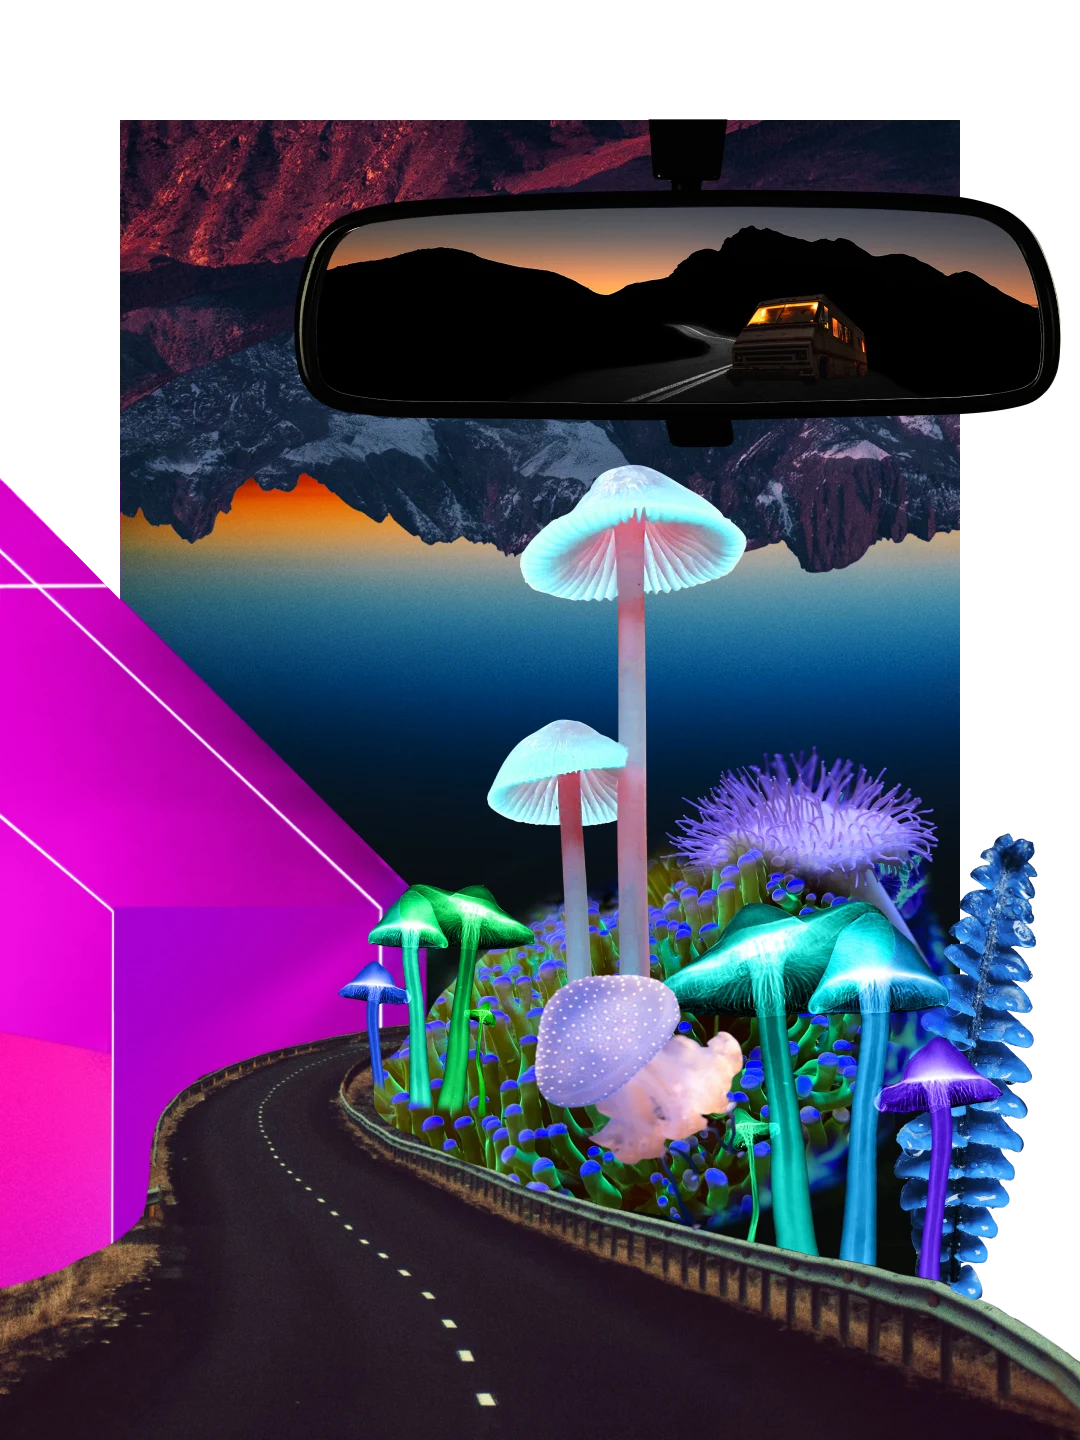 Farbenfrohe Collage zum Thema Nacht. Links eine neonpinke geometrische Form mit dunklen Bergformationen und großen Pilzen im Comic-Stil im Vordergrund. Ein Rückspiegel mit Blick auf eine Straße mit Minivan und Bergen bei Sonnenuntergang.
